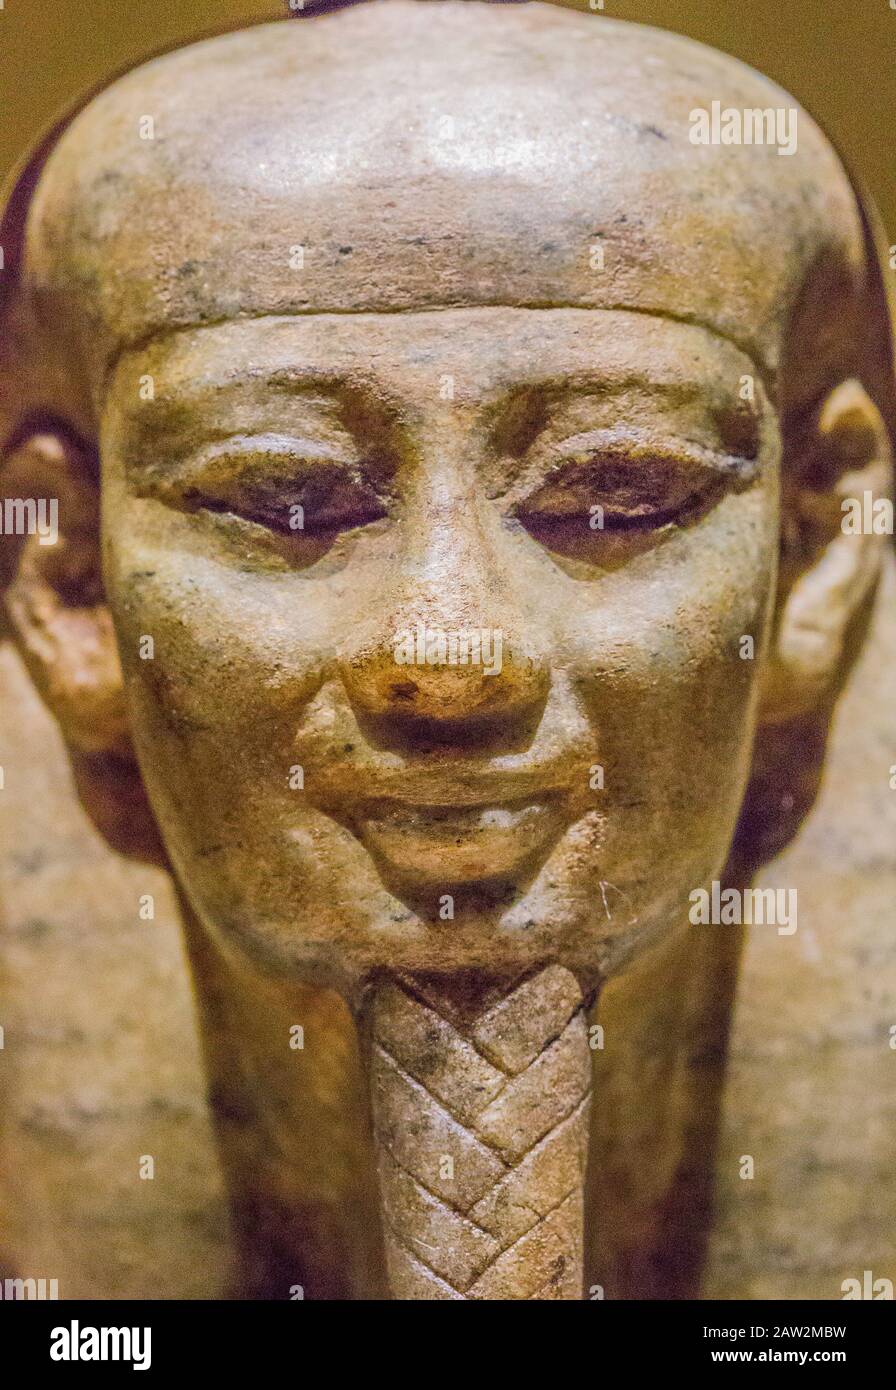 Opening visit of the exhibition “Osiris, Egypt's Sunken Mysteries”.Cairo, Egyptian Museum, statue of the god Osiris awakening. Stock Photo